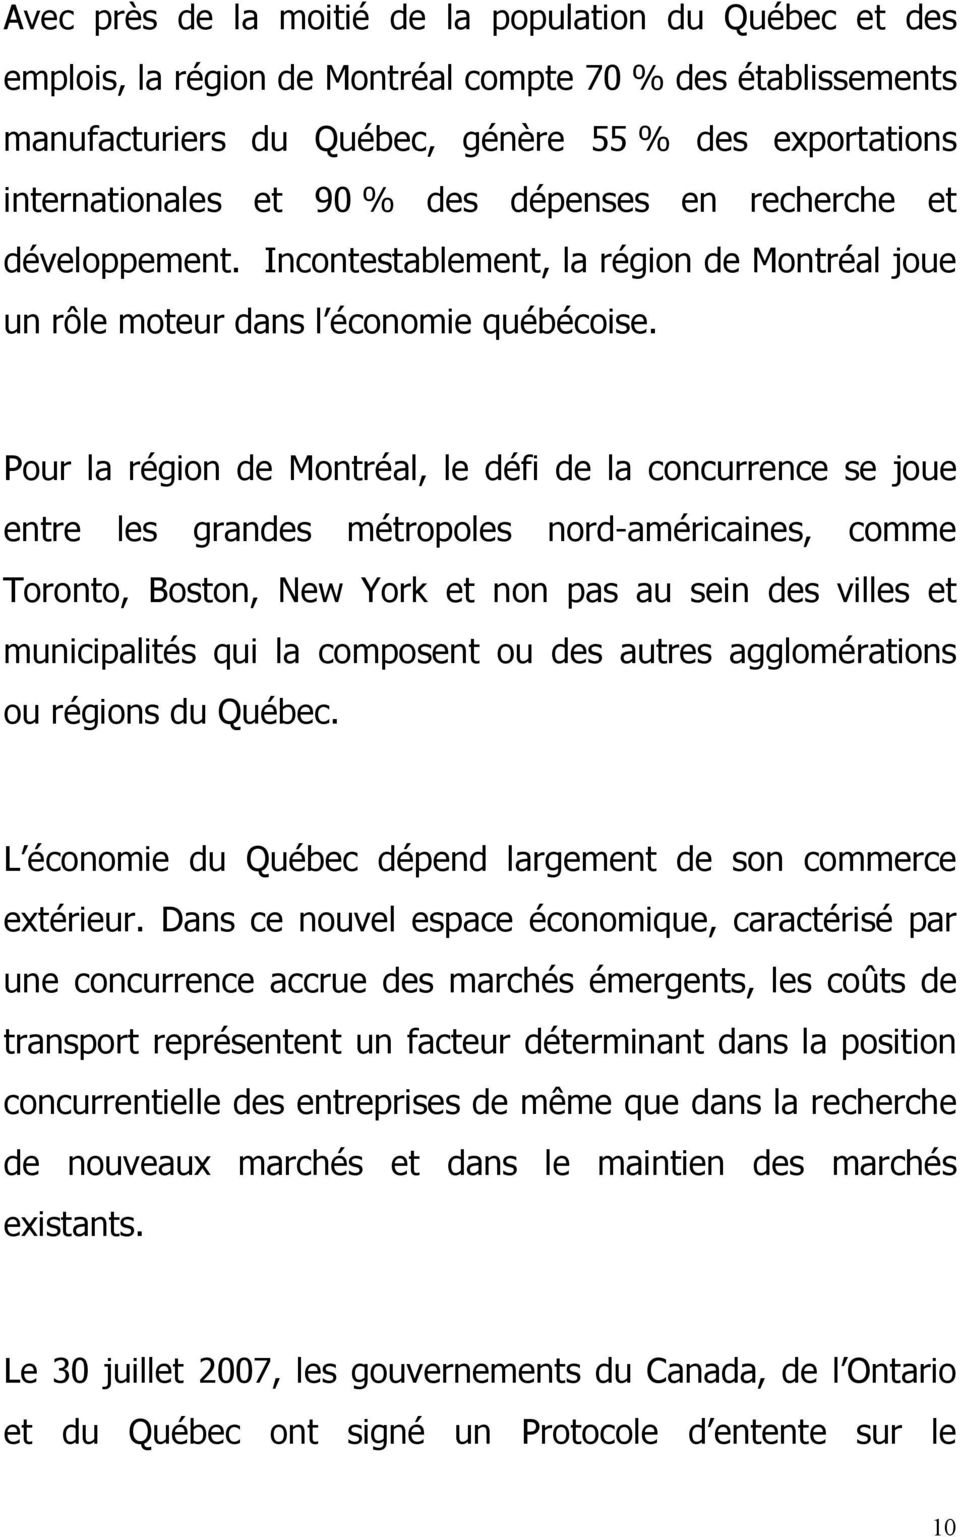 Pour la région de Montréal, le défi de la concurrence se joue entre les grandes métropoles nord-américaines, comme Toronto, Boston, New York et non pas au sein des villes et municipalités qui la